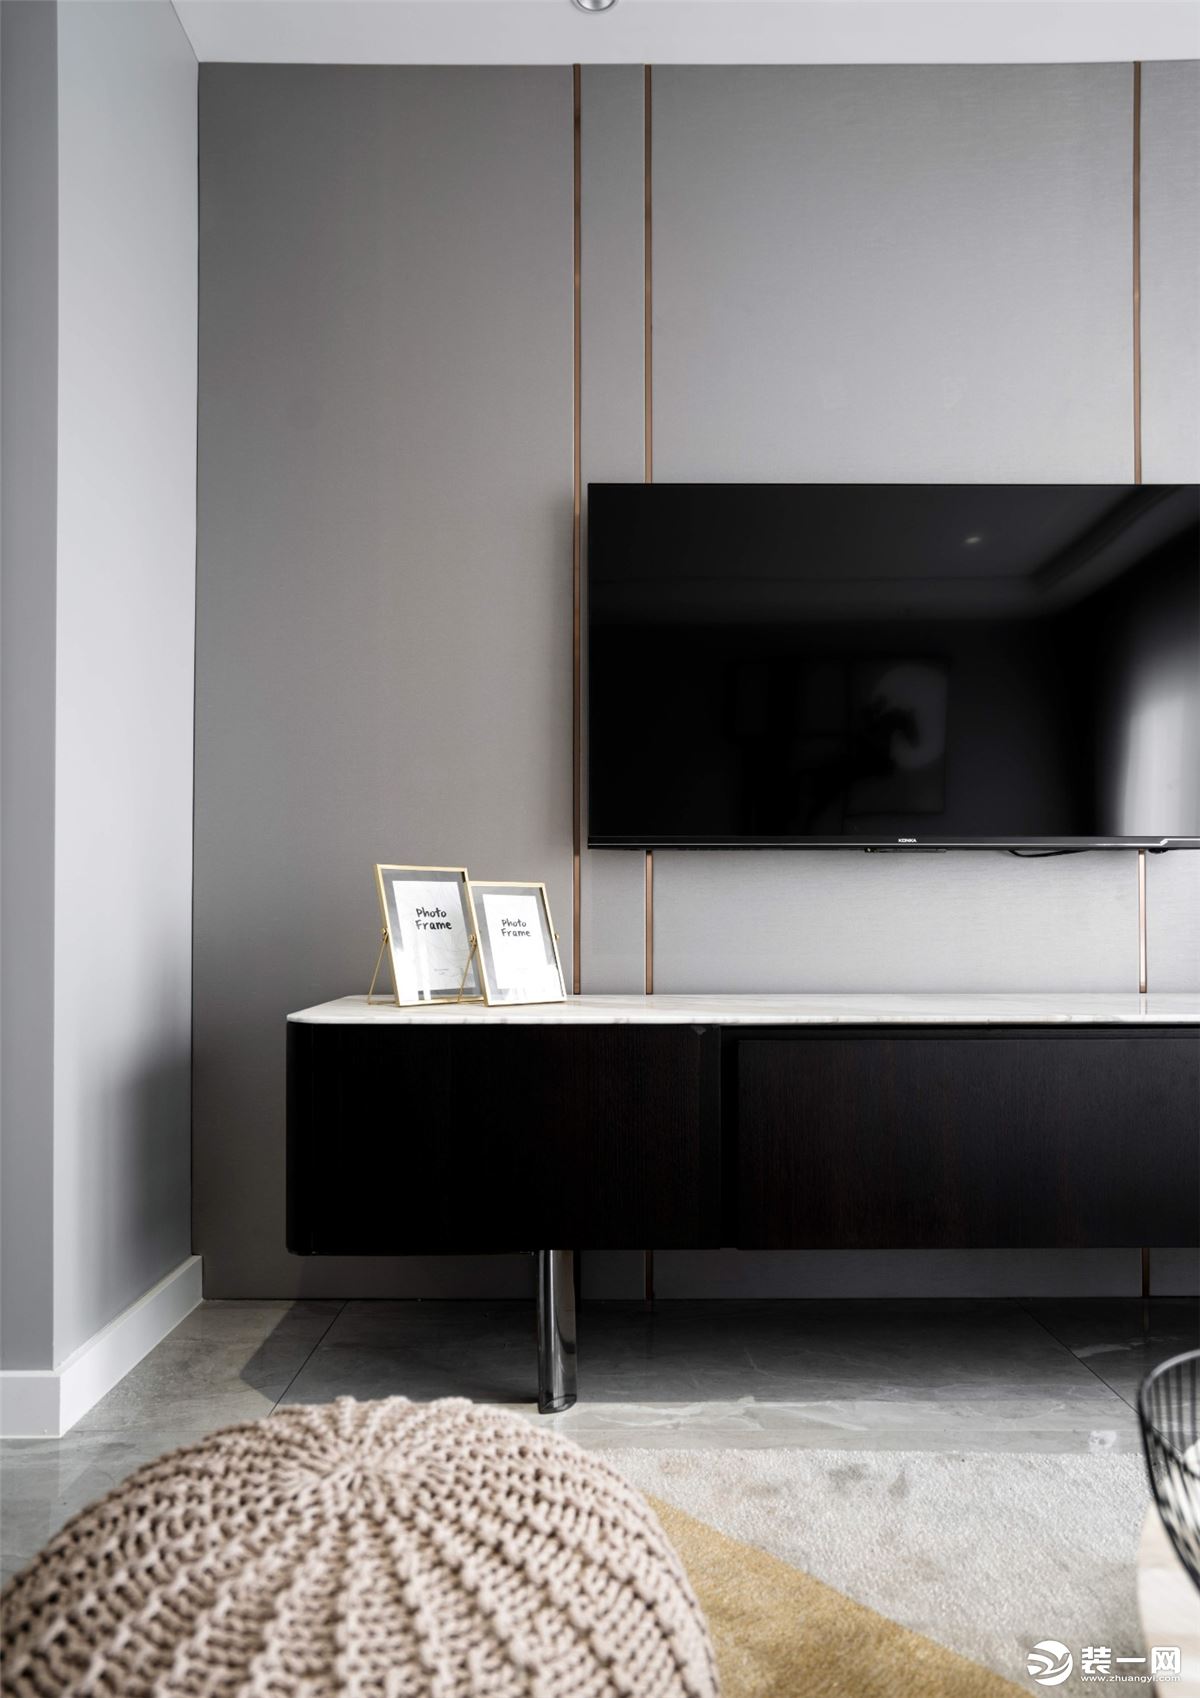 电视背景墙是灰色和金色线条的搭配，干净利落。